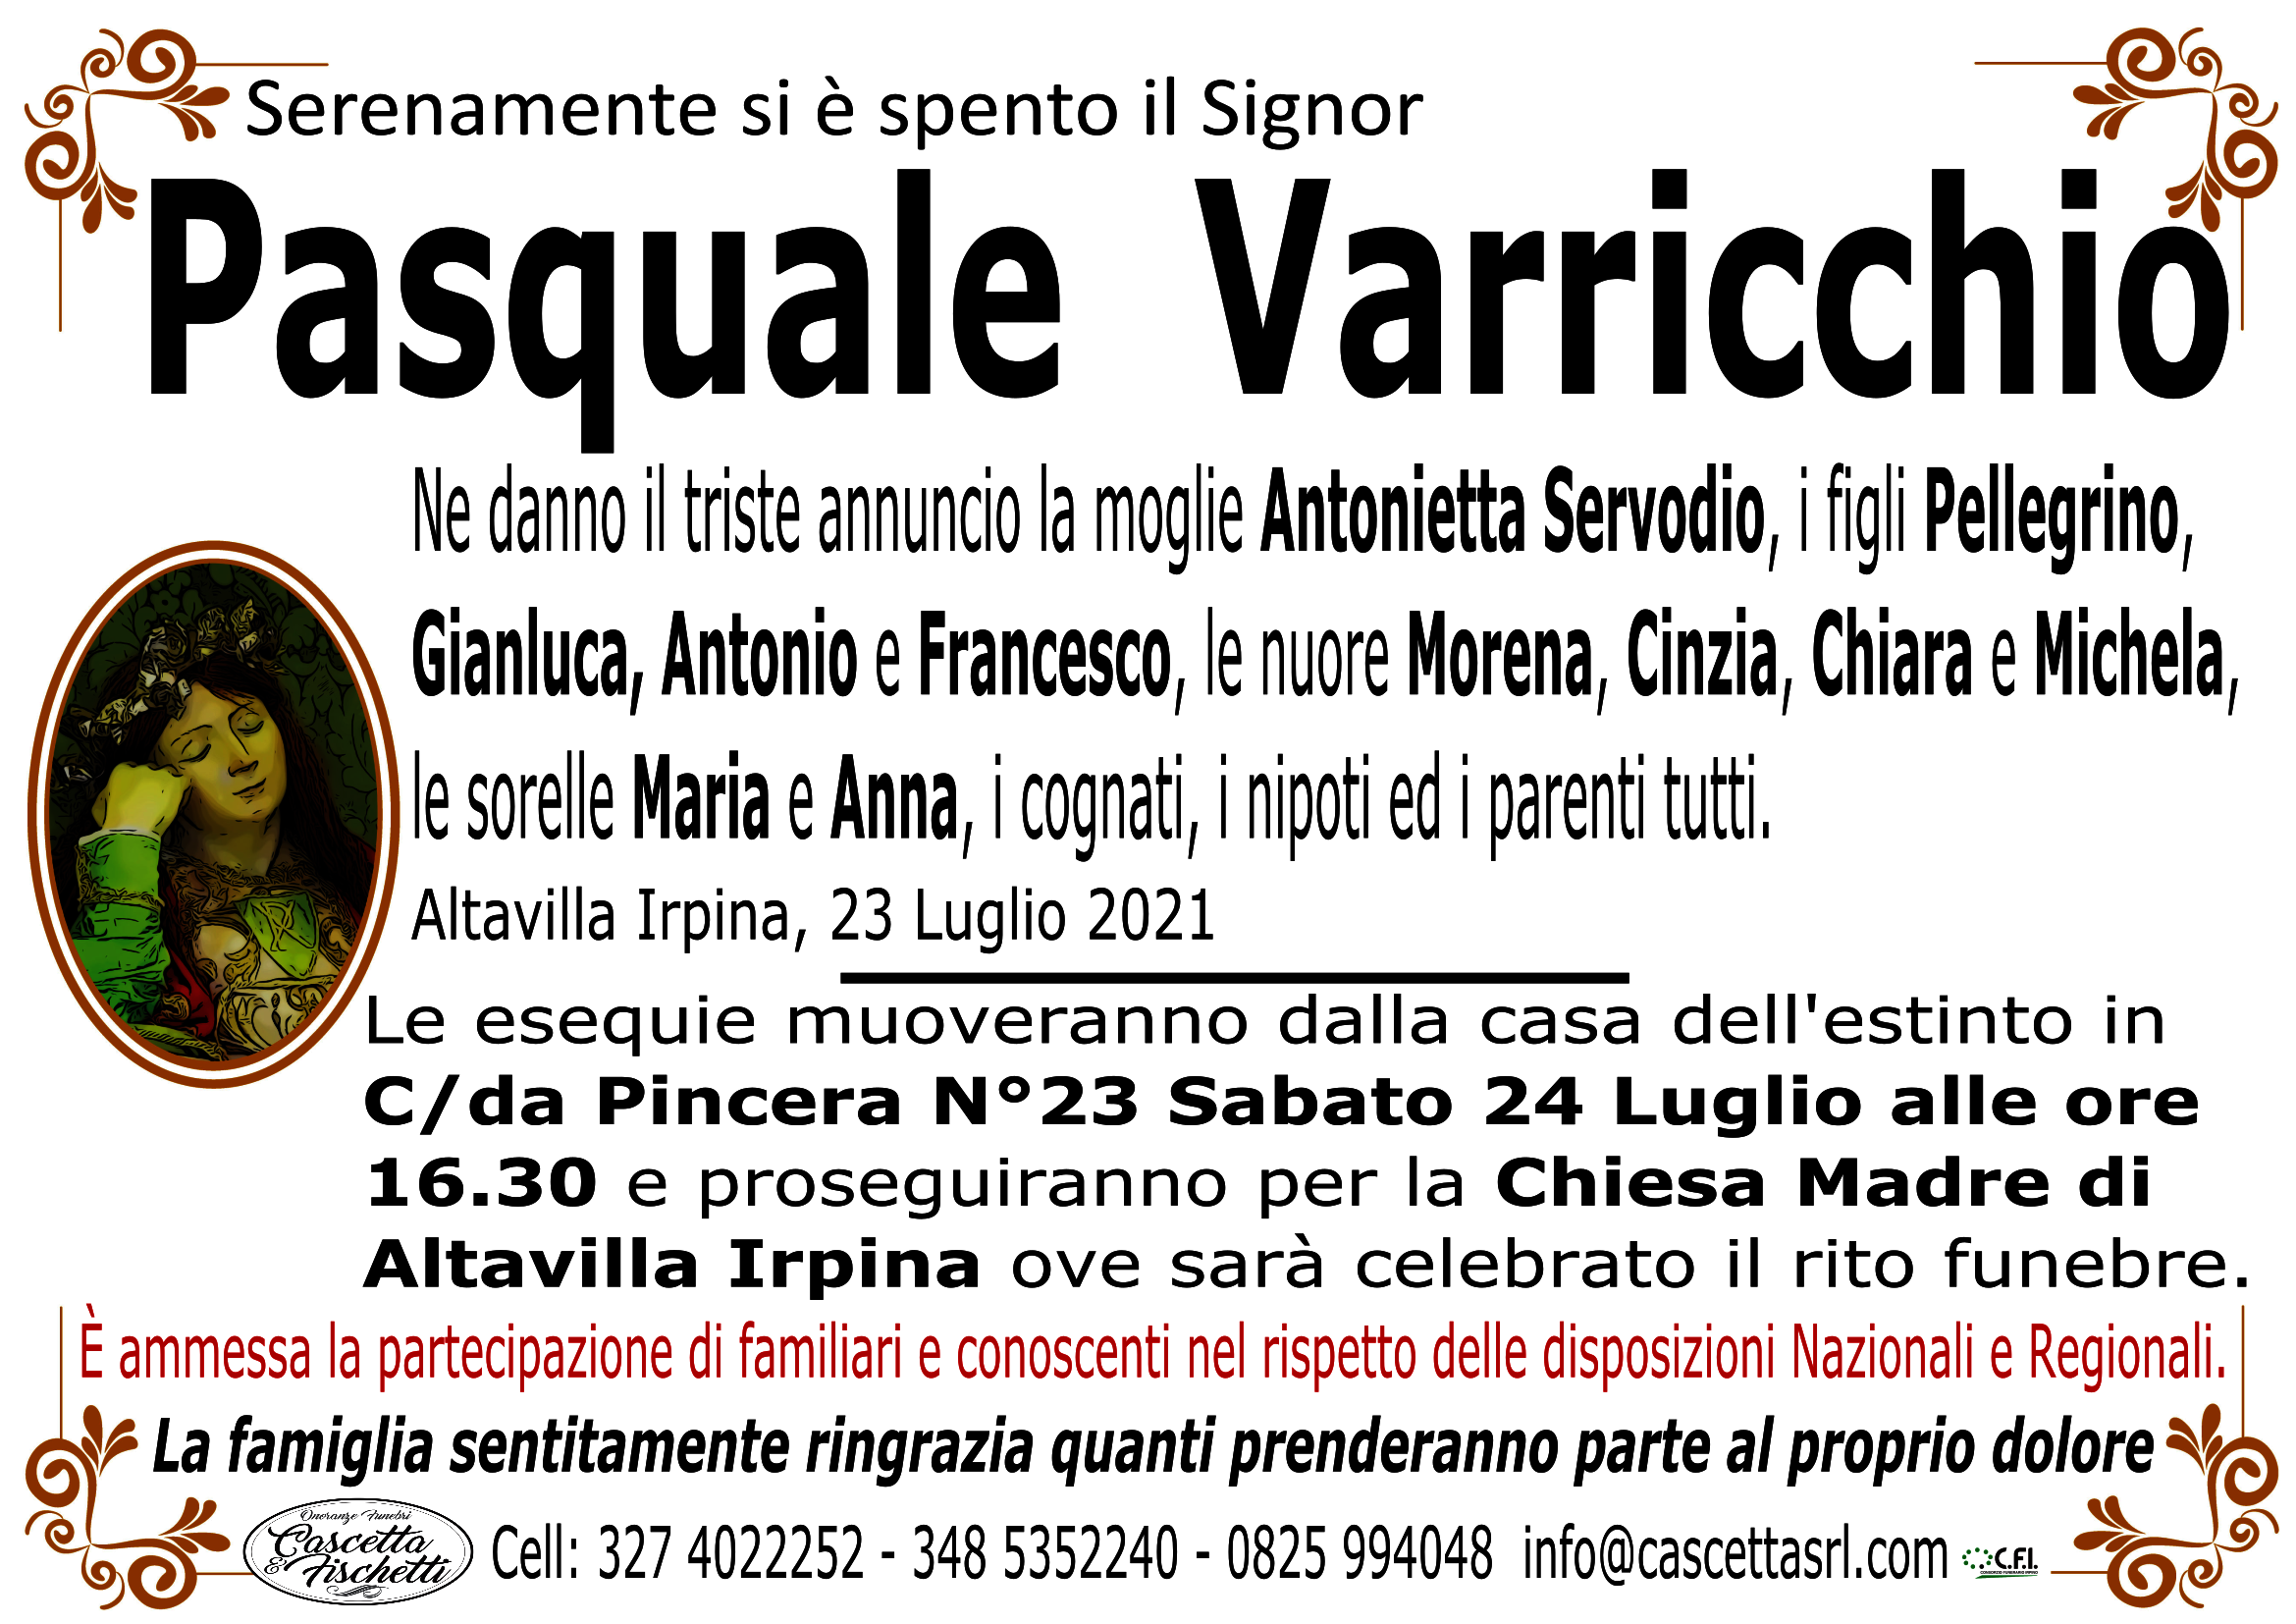 Pasquale Varricchio